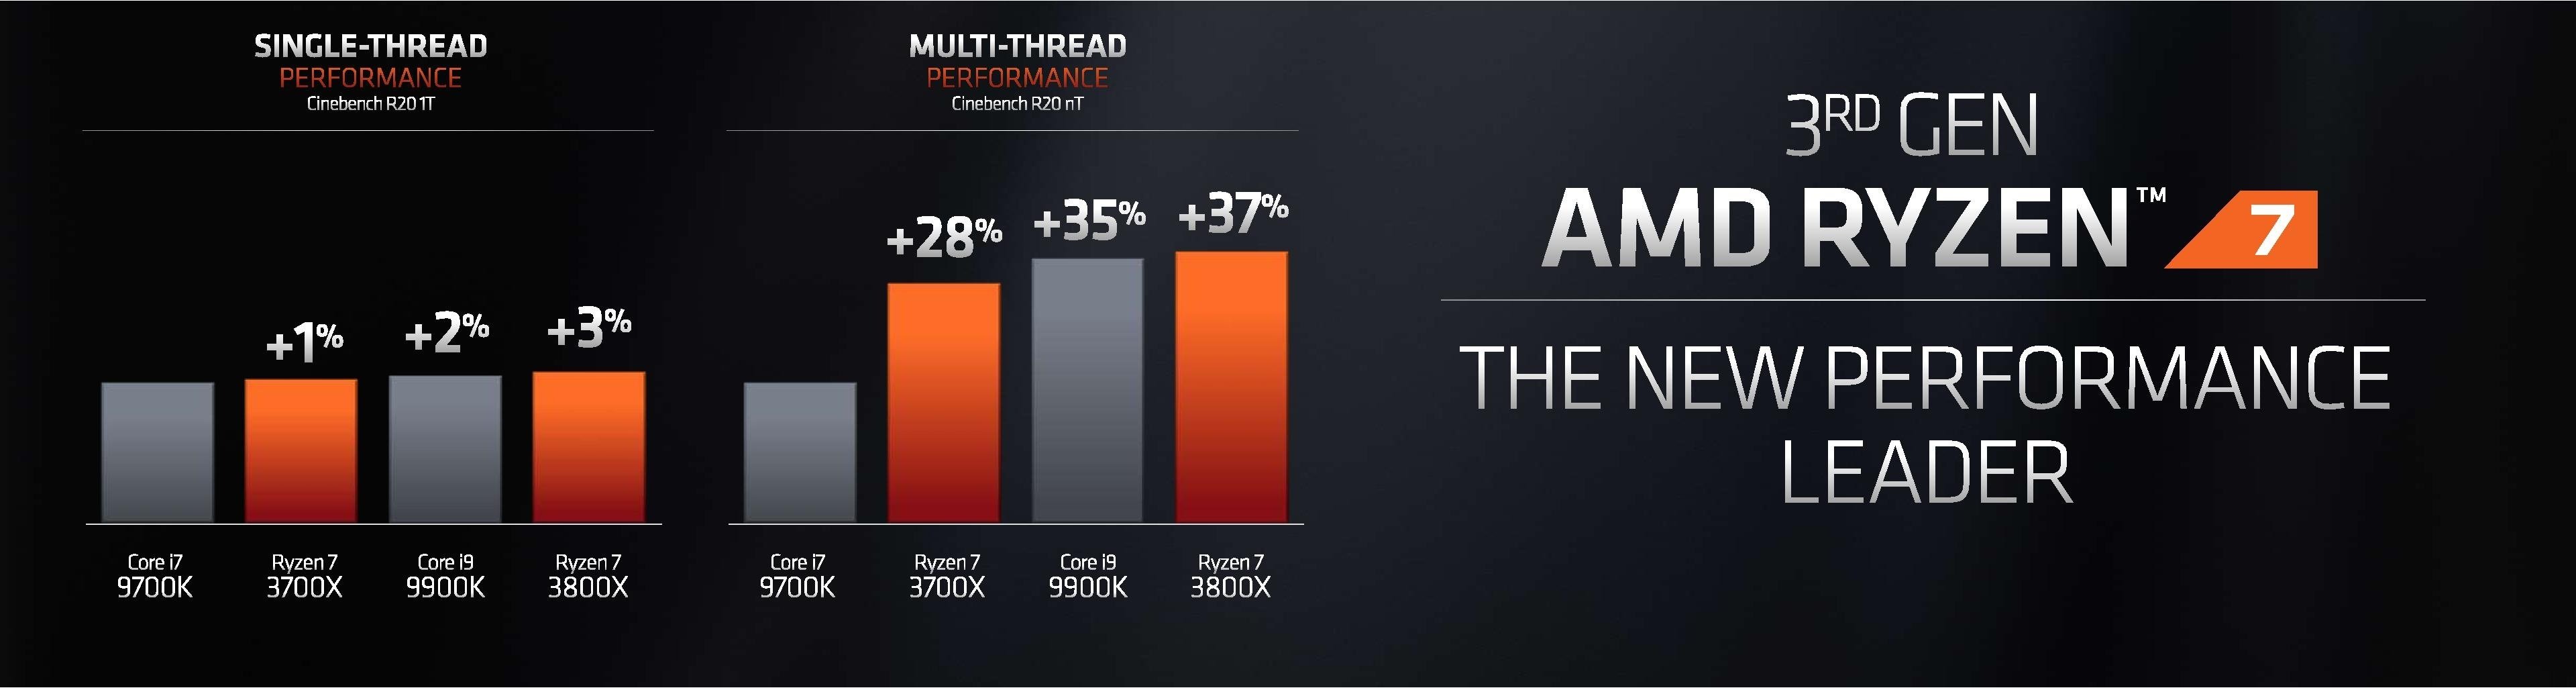 Số liệu so sánh giữa chip của AMD Ryzen 7 và Intel 